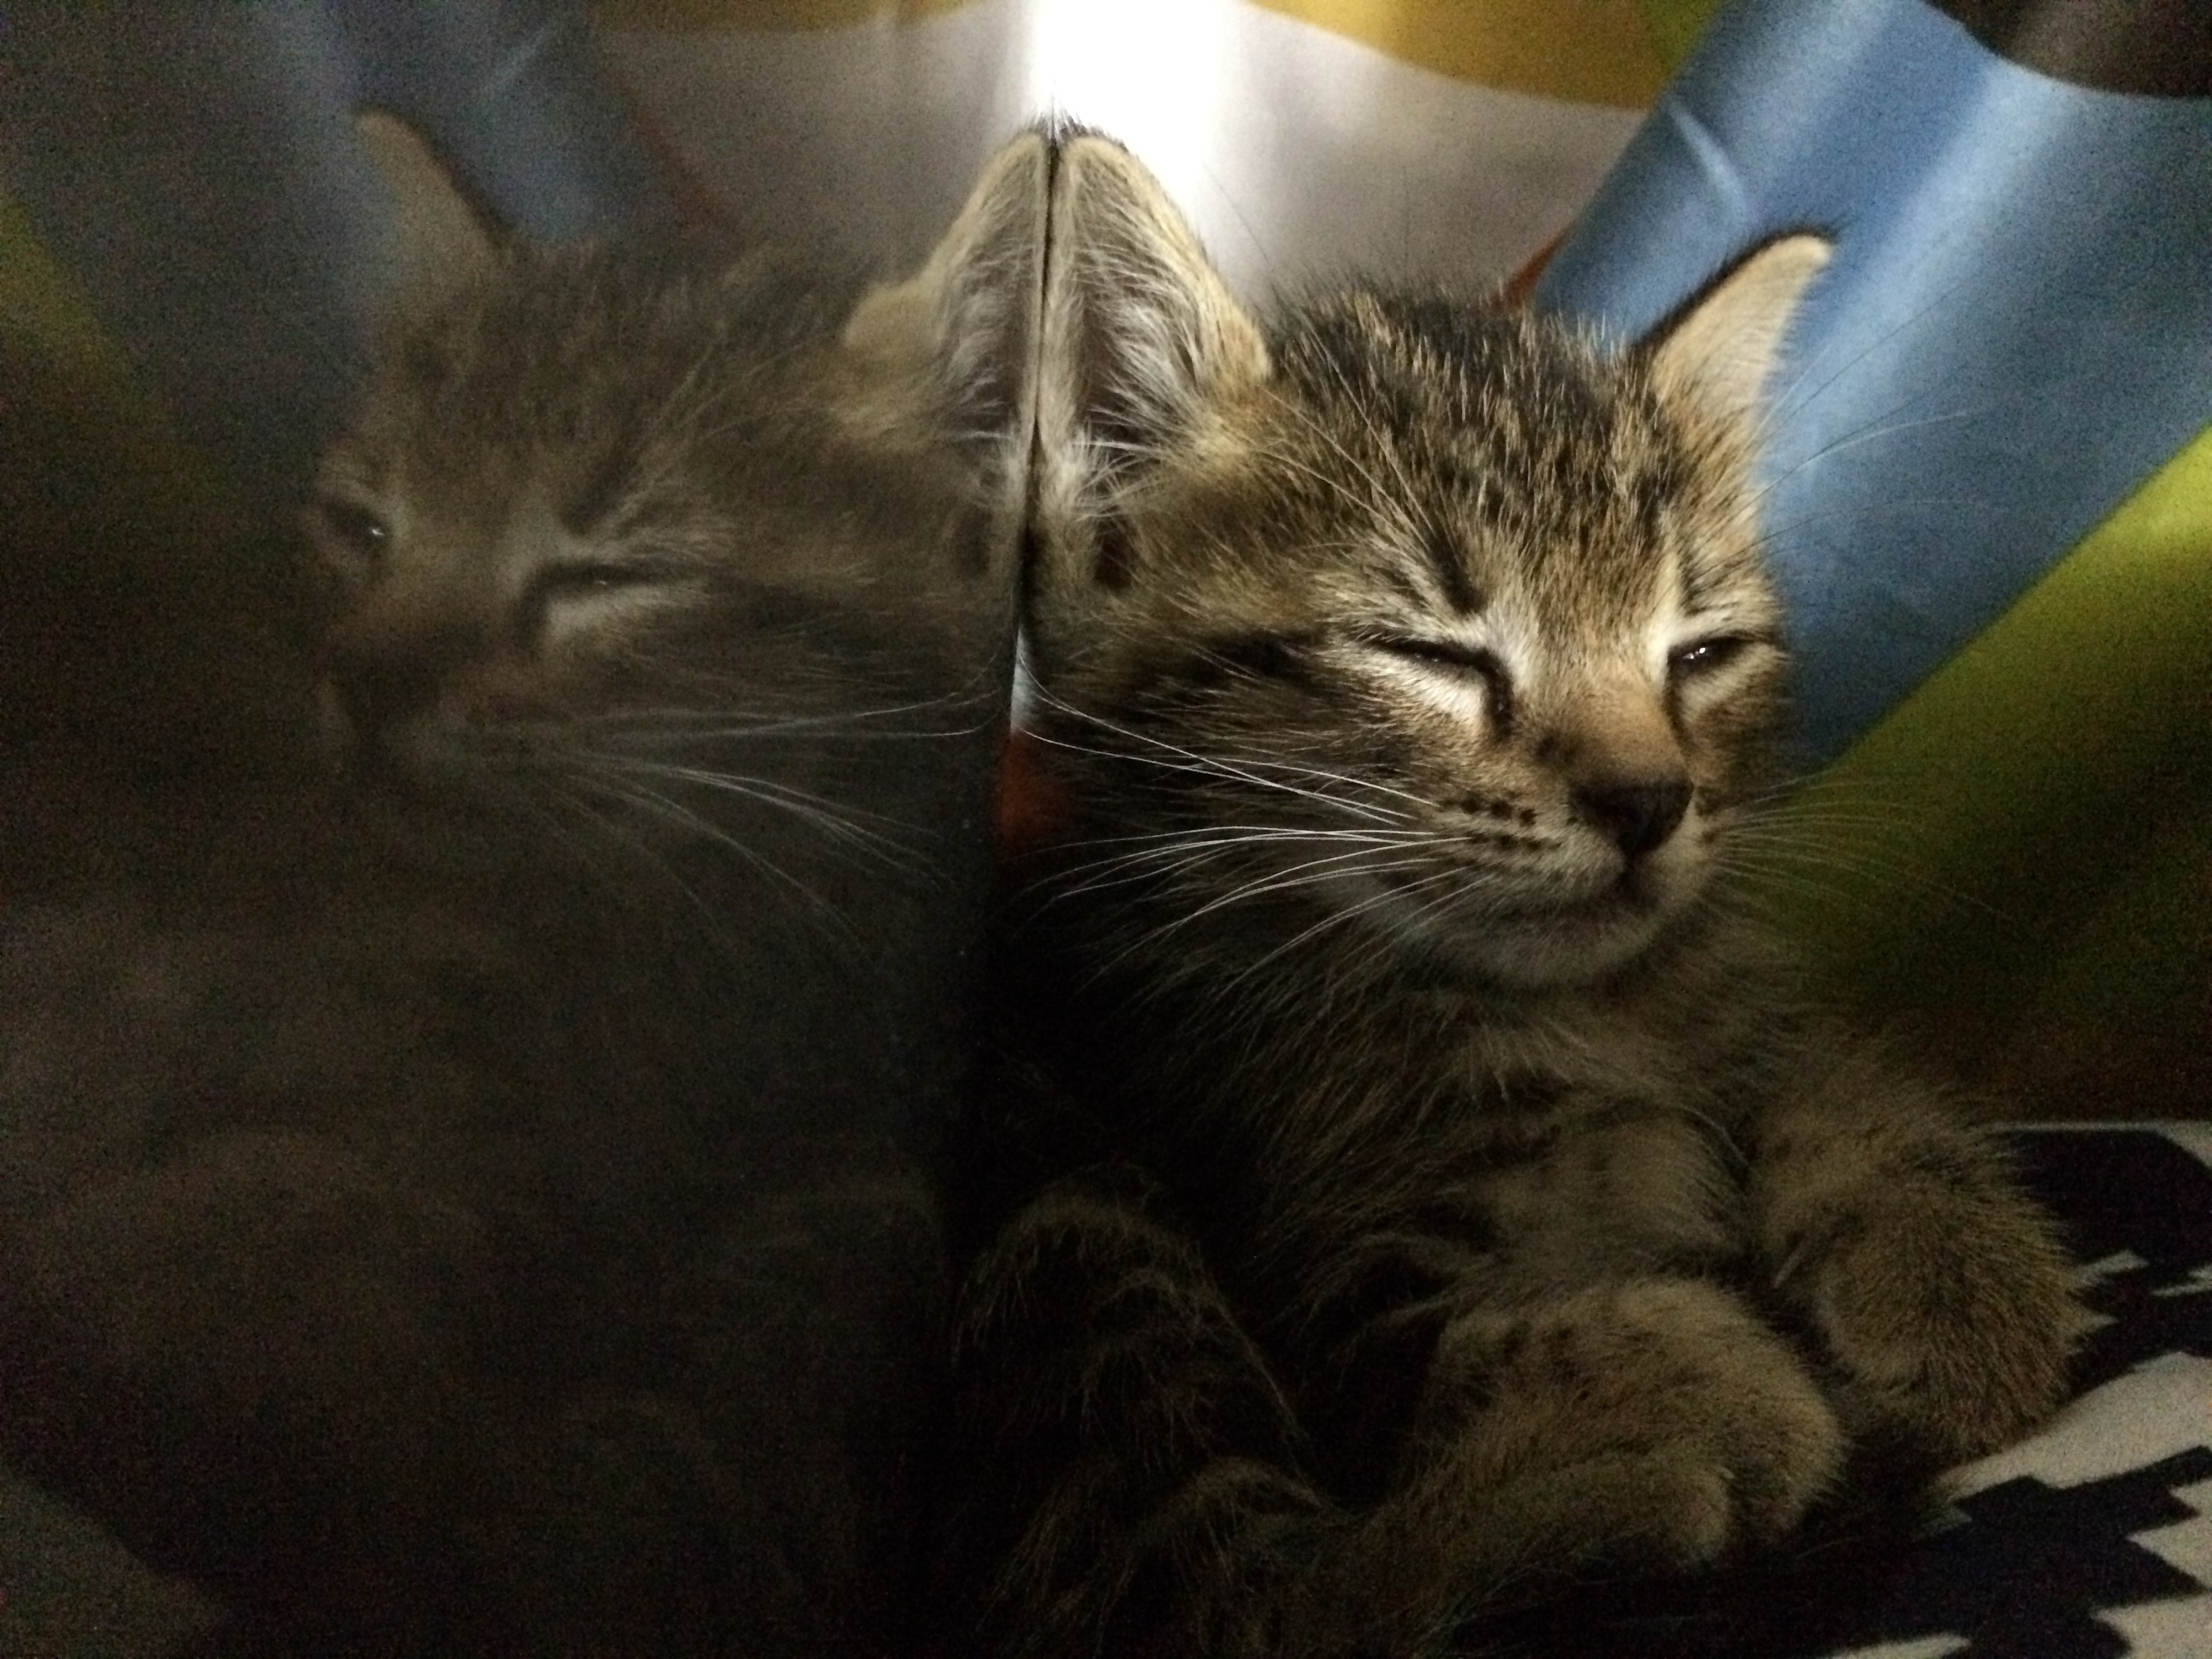 ลูกแมว1เดือน นอนไม่หลับตา เหมือนตาค้าง